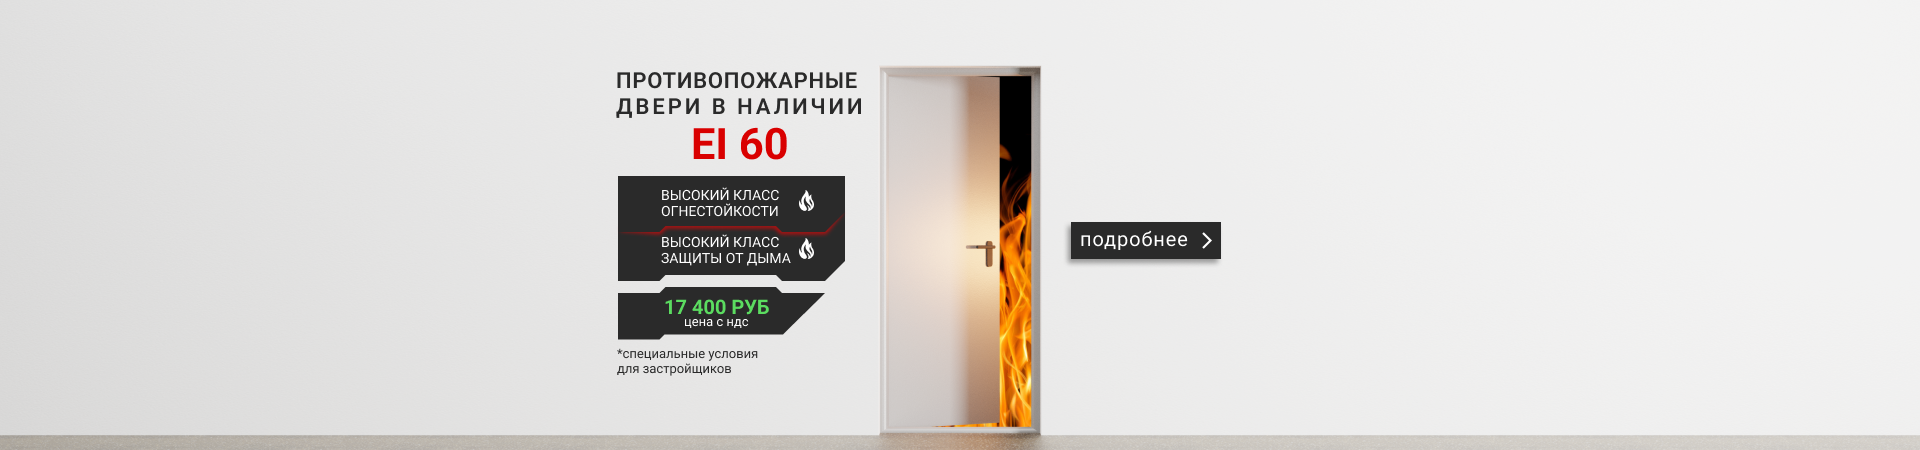 Противопожарная дверь ДМП- ЕI 60